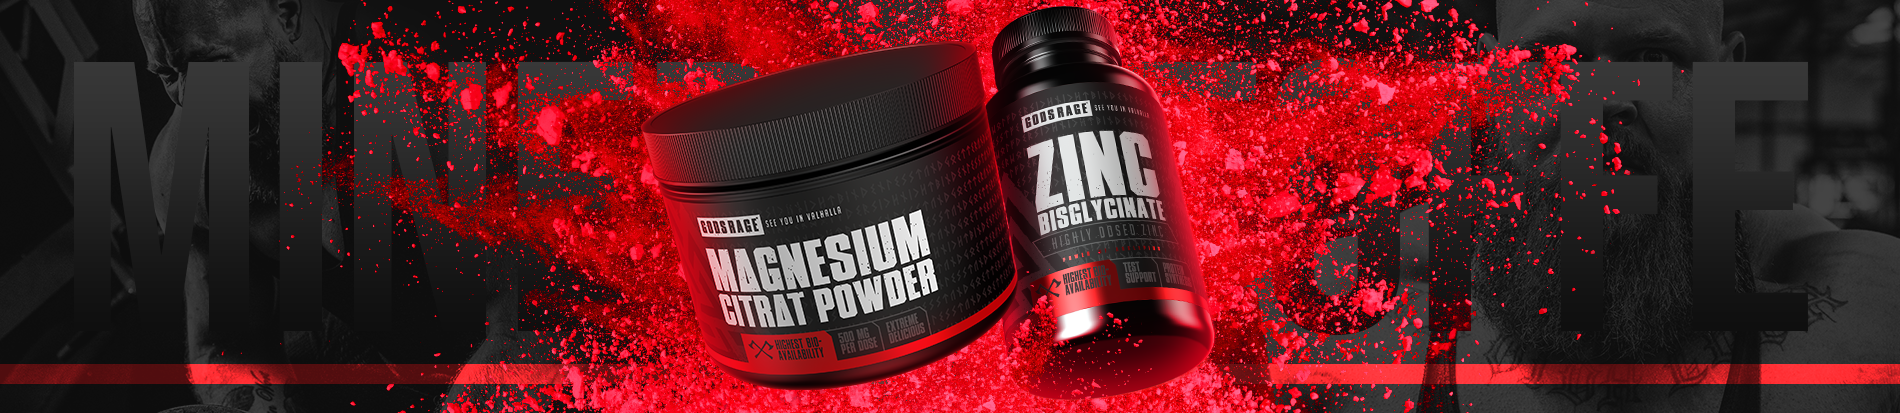 Banner: Magnesium Citrat Powder und Zinc Bisglycinate